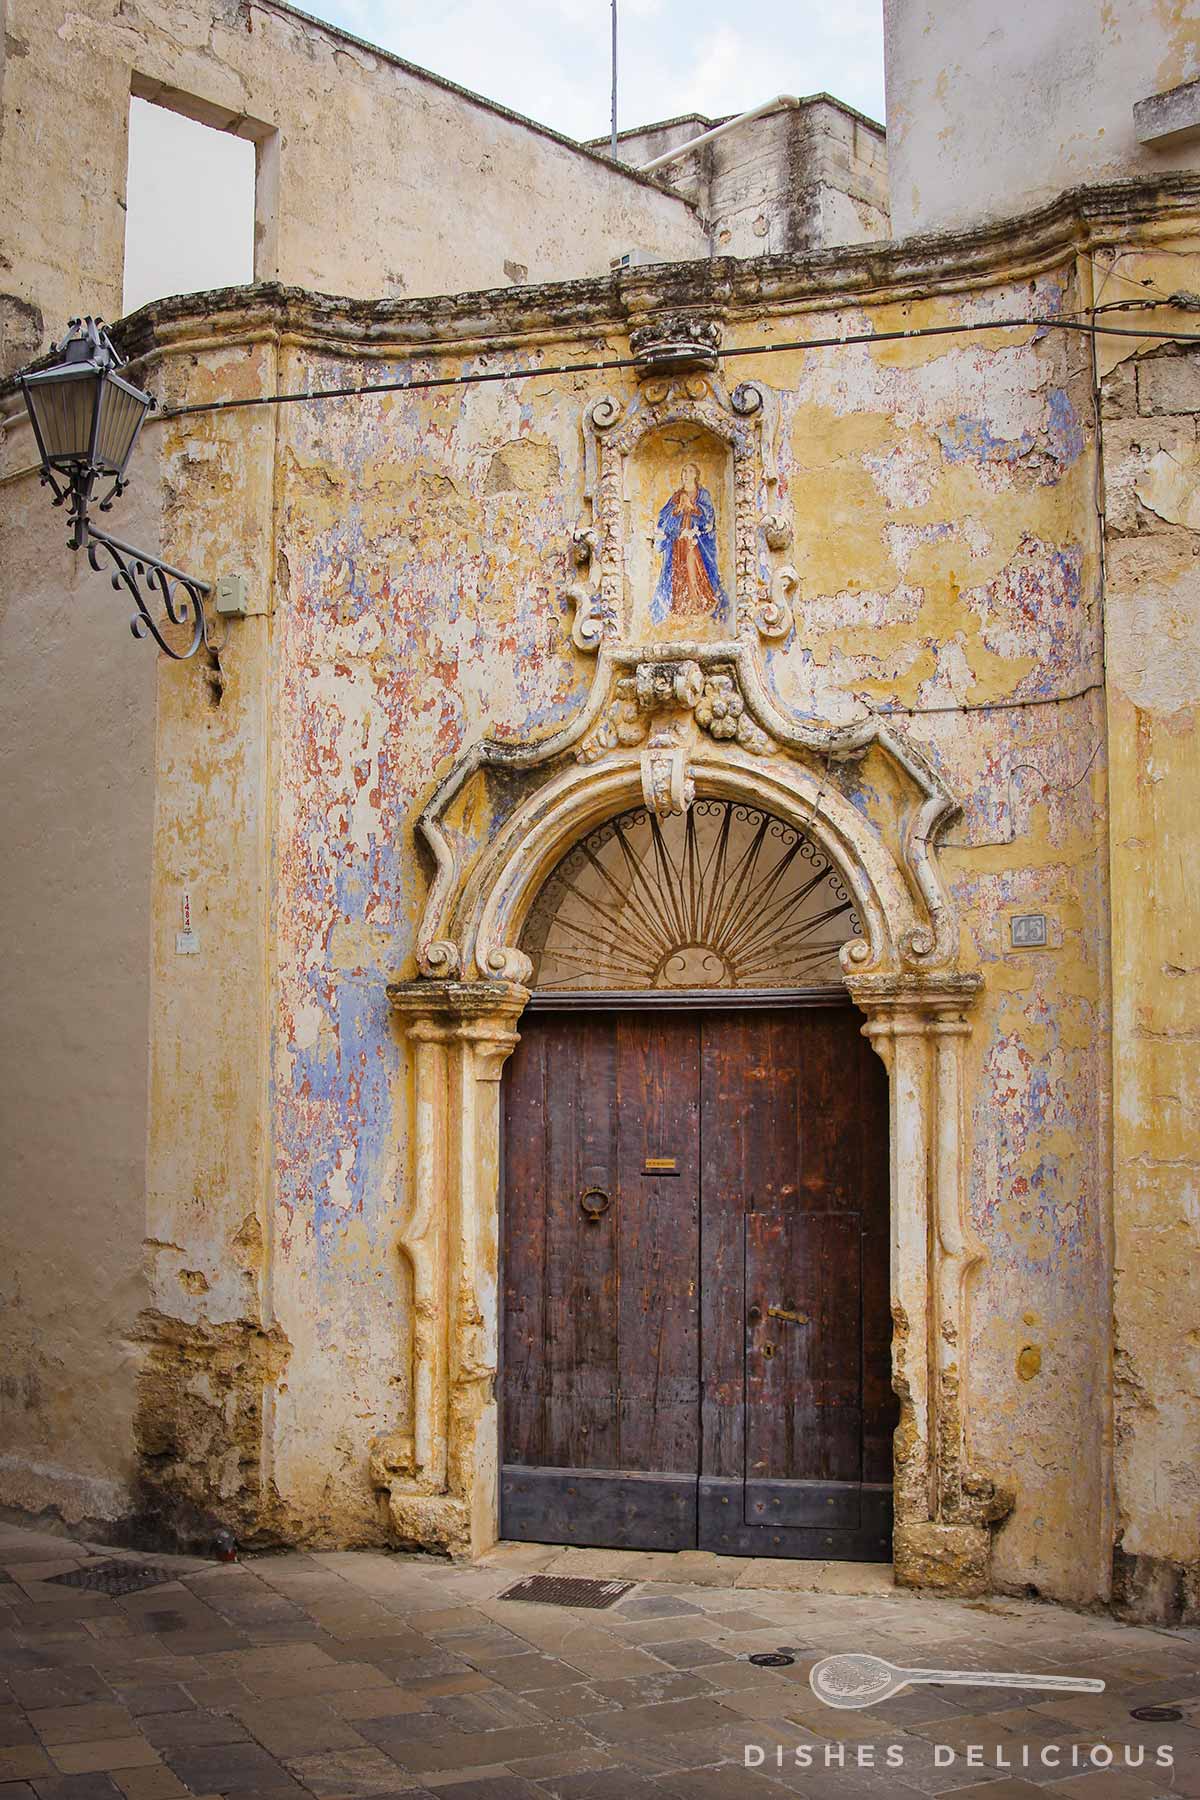 Barockverziertes Eingangstor zu einem Palazzo, das Mauerwerk bröckelt, die Farbe der darauf gemalten Fresken blättern ab.